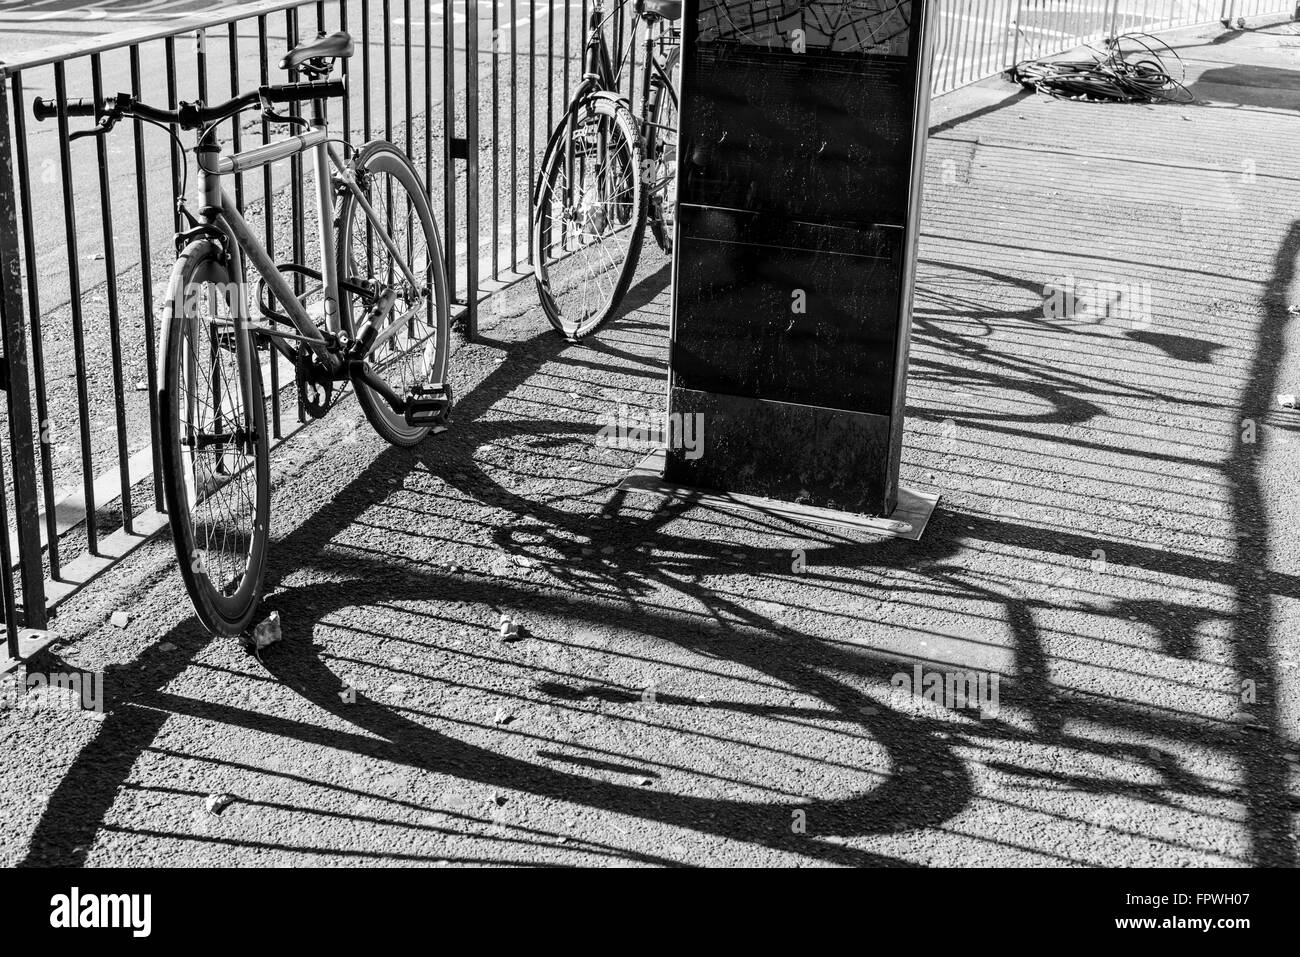 Zwei Straße City Bikes zu einem Metallzaun gesperrt. Neben einer Straße. große Schatten auf die Fahrbahn projiziert. Schwarz und Weiß. Stockfoto